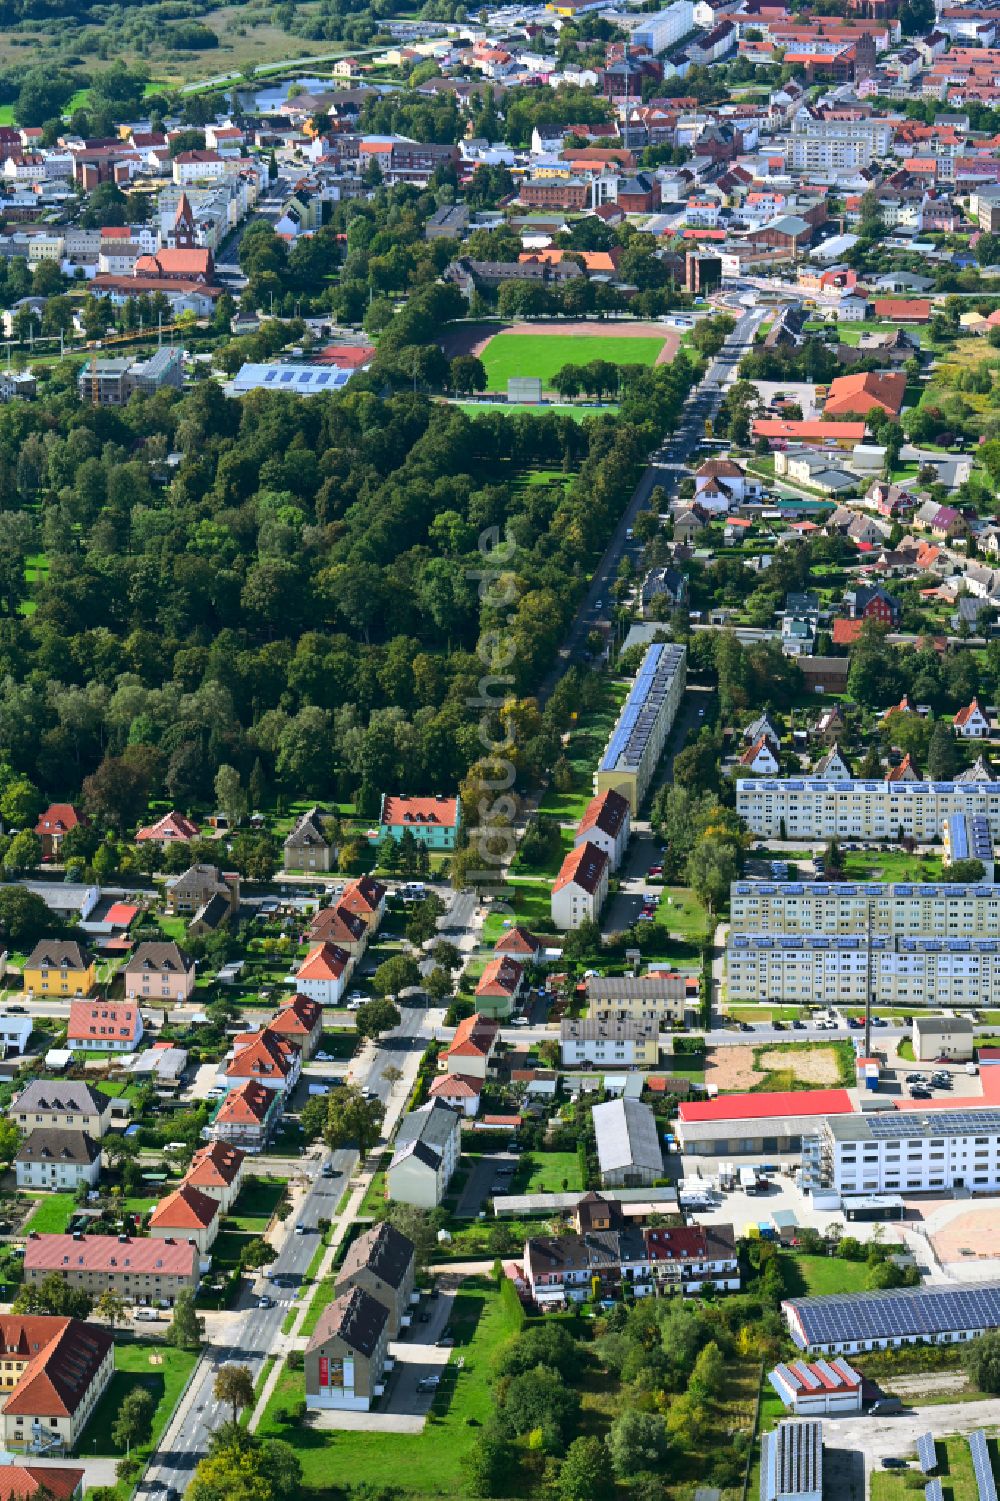 Luftbild Demmin - Wohngebiet der Mehrfamilienhaussiedlung in Demmin im Bundesland Mecklenburg-Vorpommern, Deutschland